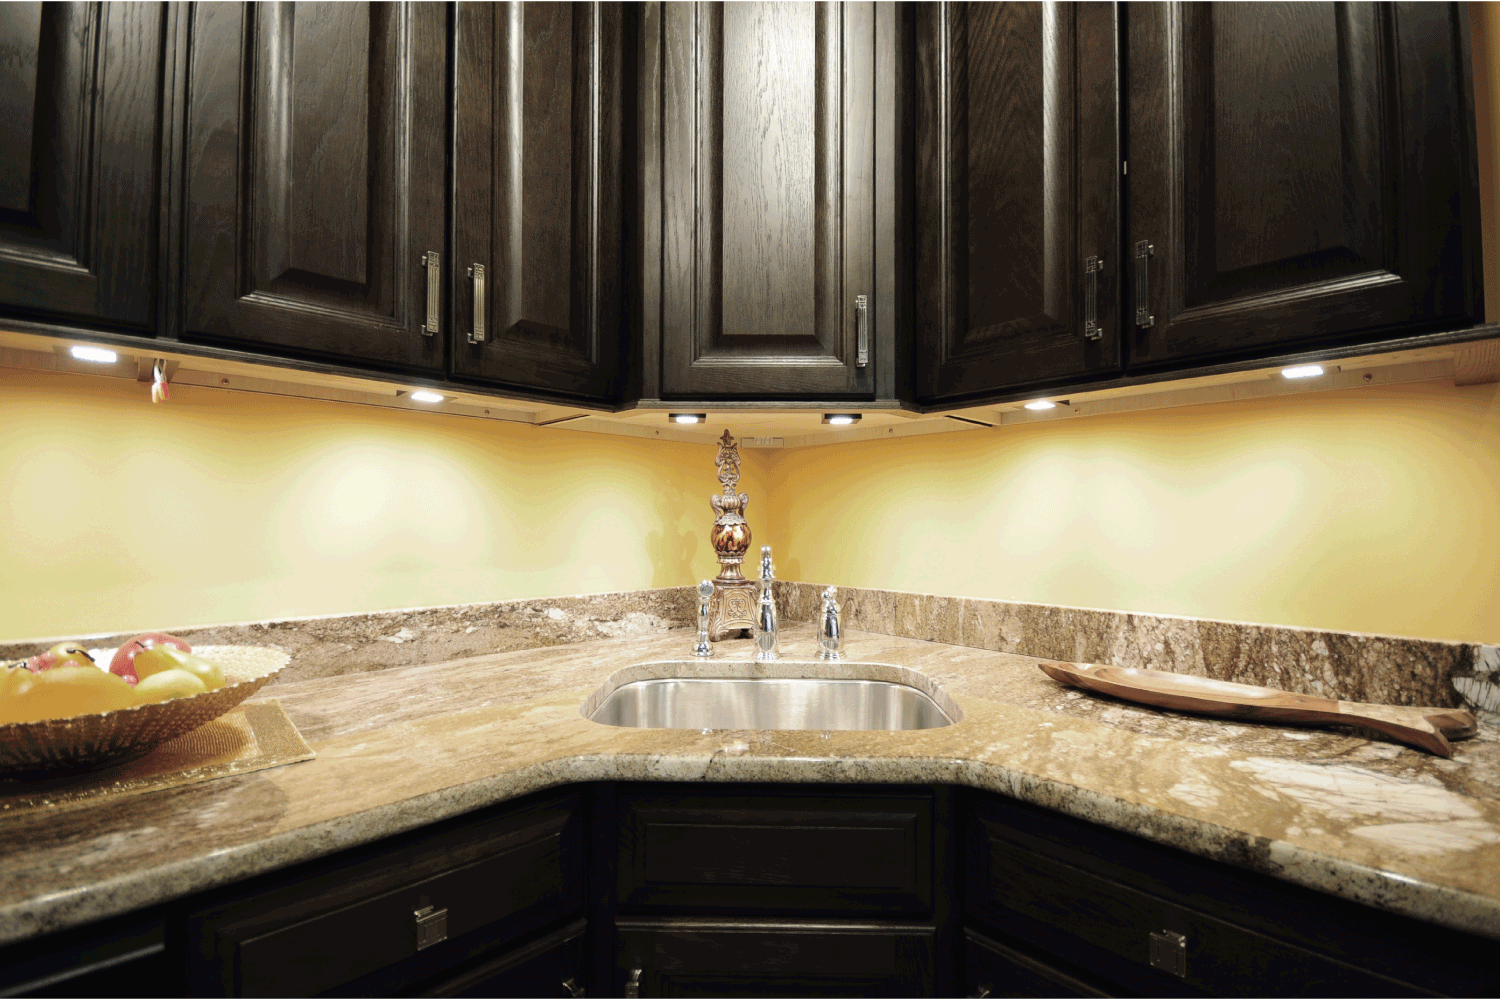 dark kitchen cabinets above granite kitchen sink with down lights